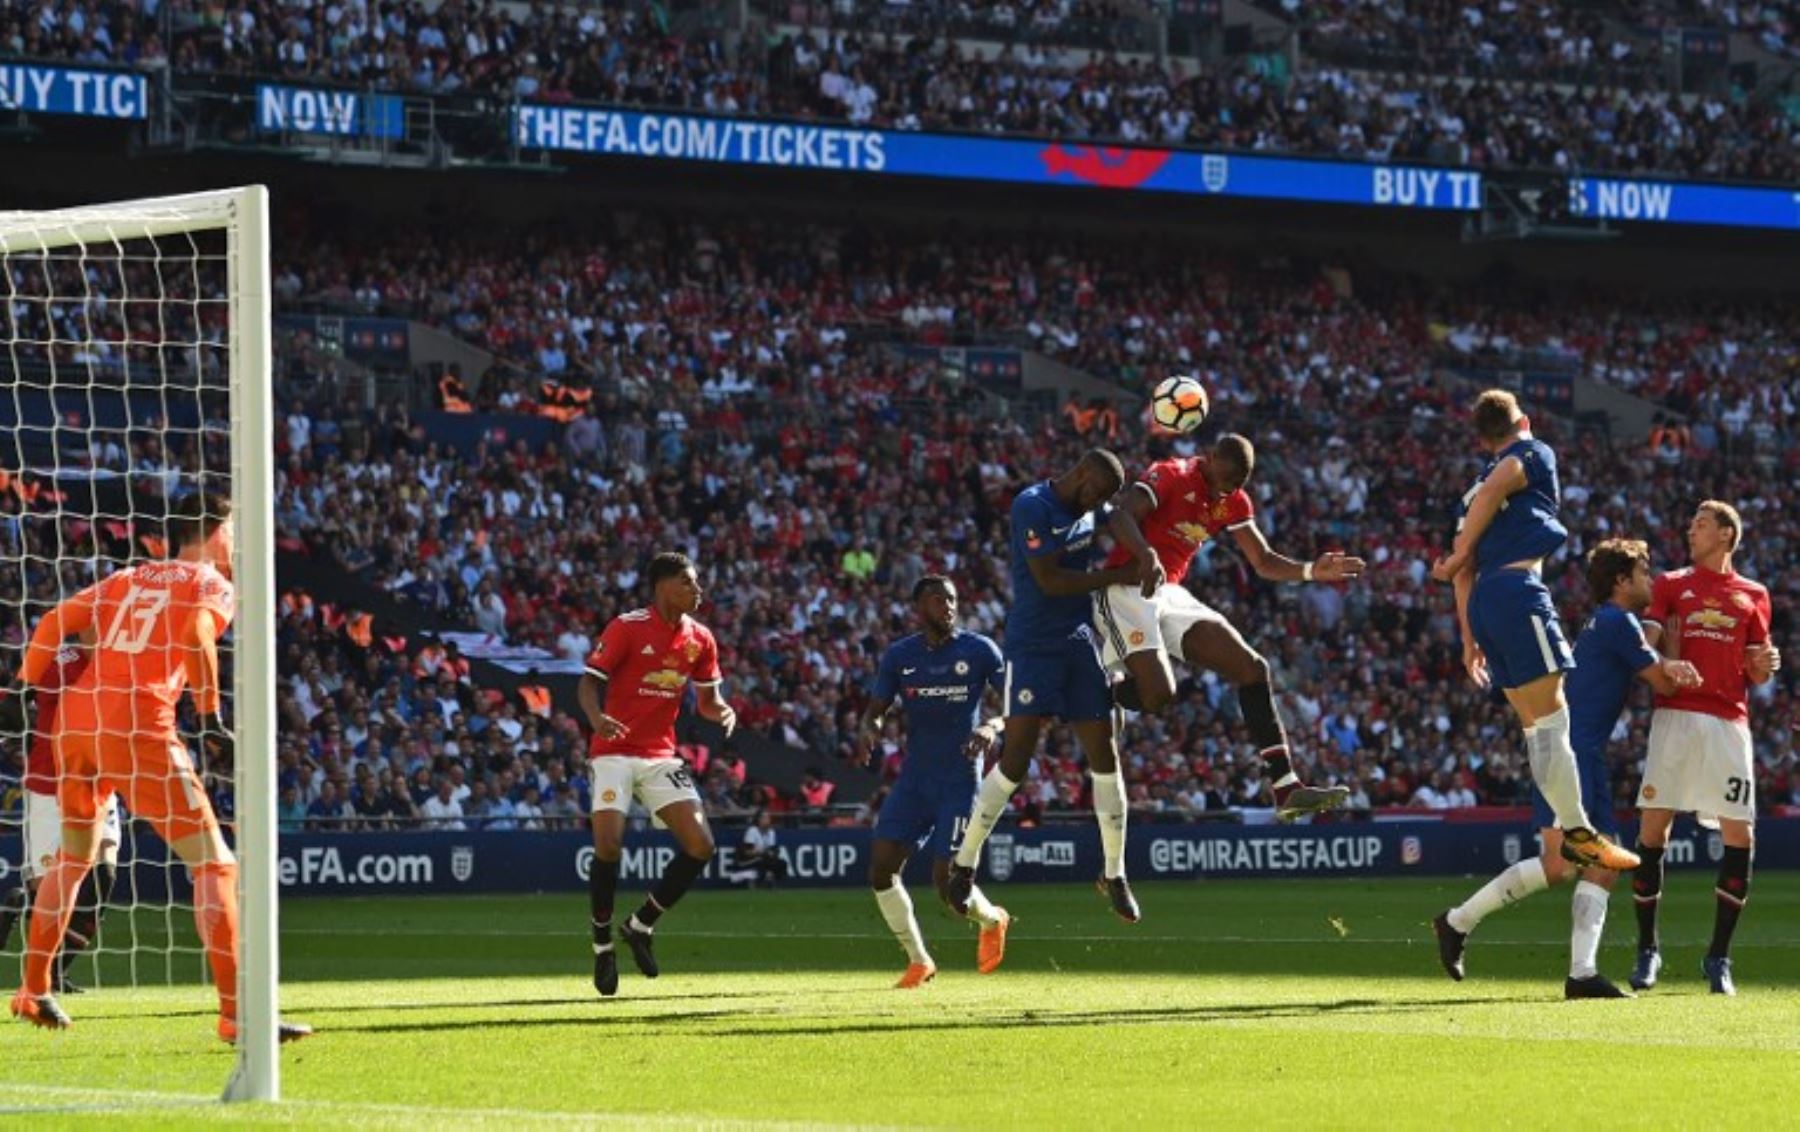 El francés del Manchester United Paul Pogba  intenta un cabezazo bajo la presión del defensa alemán Chelsea Rudiger durante el partido de fútbol final de la FA Cup inglesa entre Chelsea y Manchester.Foto:AFP